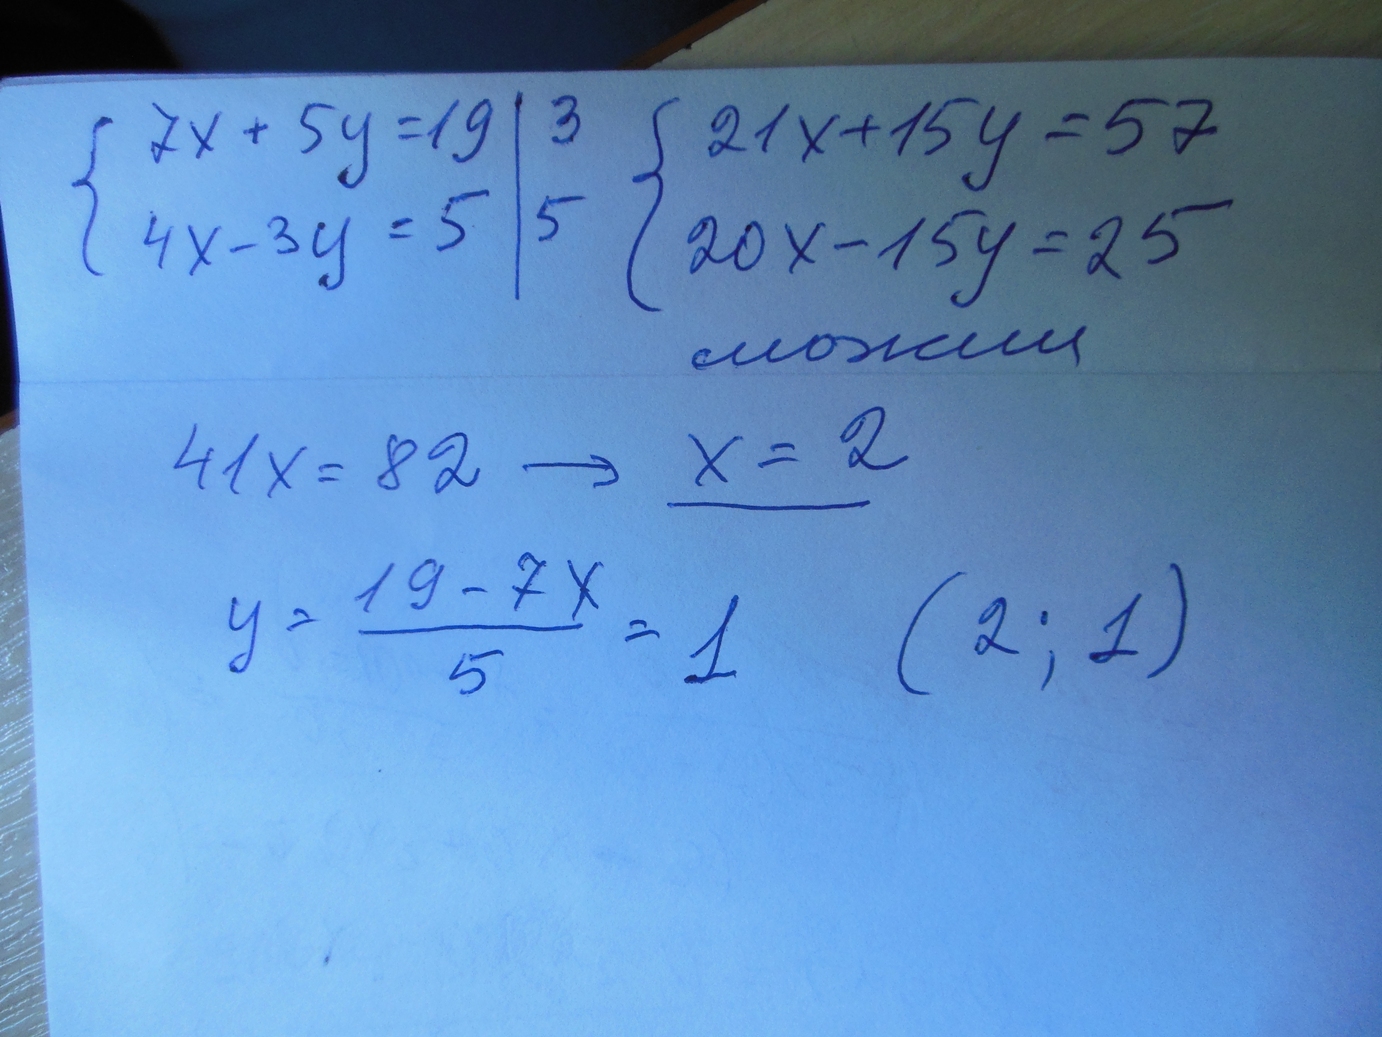 0 4x 1 5y 2. 7x+5y 19 4x-3y 5. 3x+5y=19 ответ kэz. 7x+5y=19 4x-3y=5 решить методом подстановки. X+7/5x+7 x+7/7x+5.